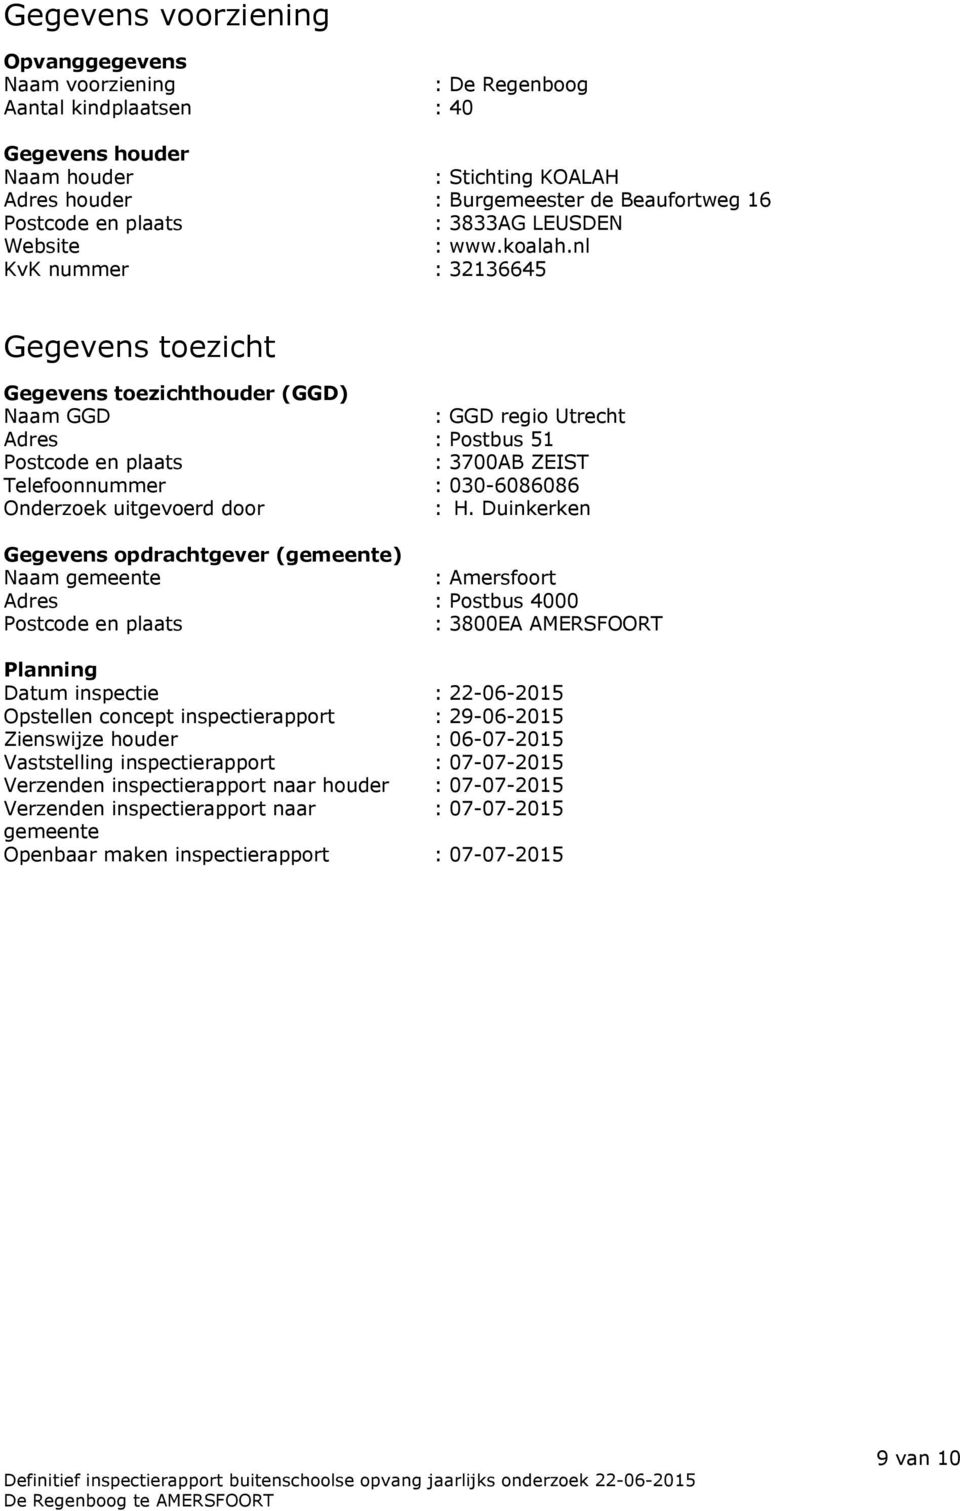 nl KvK nummer : 32136645 Gegevens toezicht Gegevens toezichthouder (GGD) Naam GGD : GGD regio Utrecht Adres : Postbus 51 Postcode en plaats : 3700AB ZEIST Telefoonnummer : 030-6086086 Onderzoek